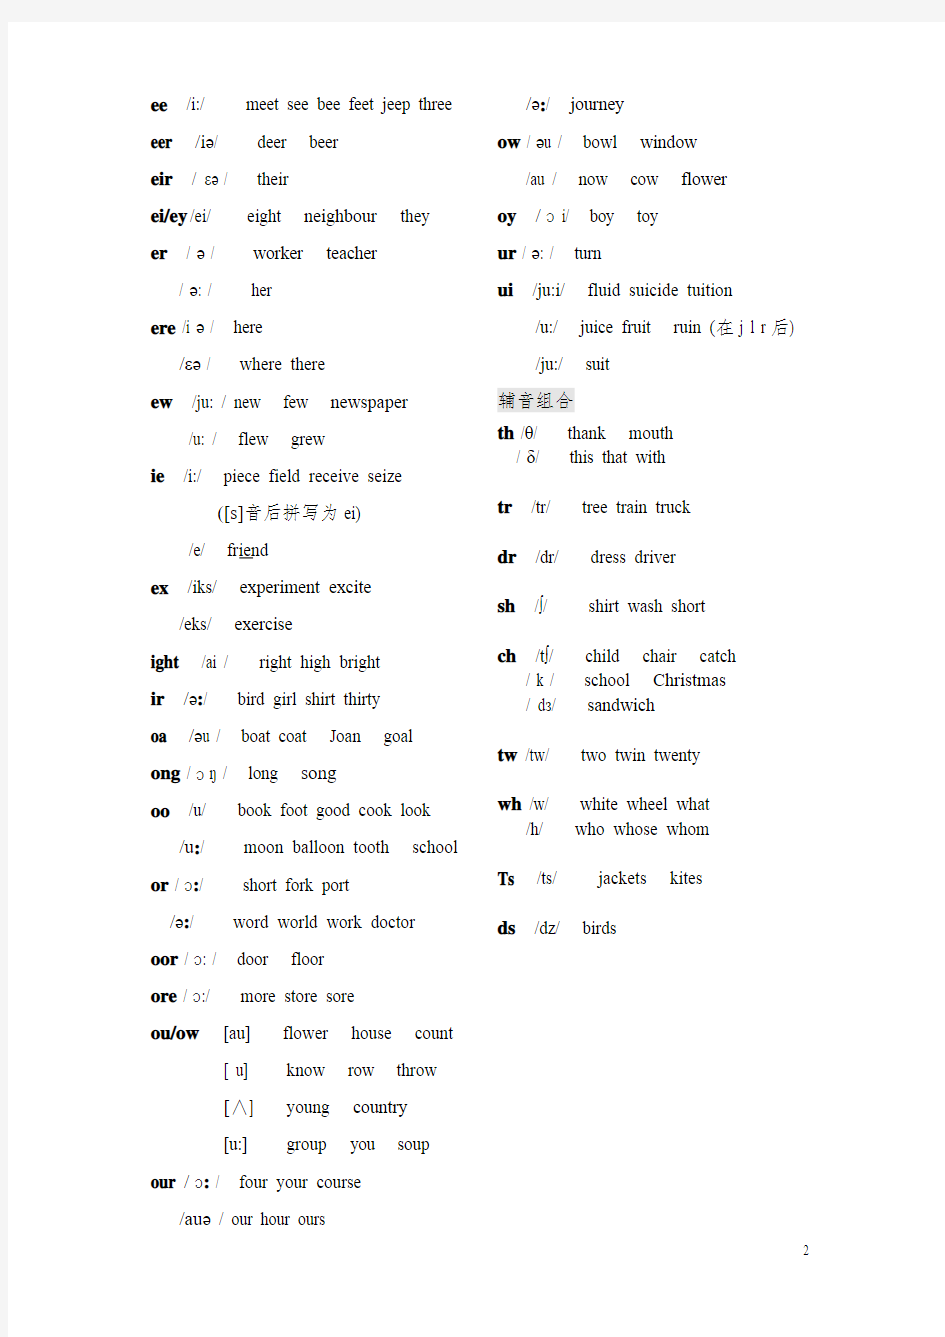 26个英语字母及字母组合发音规律